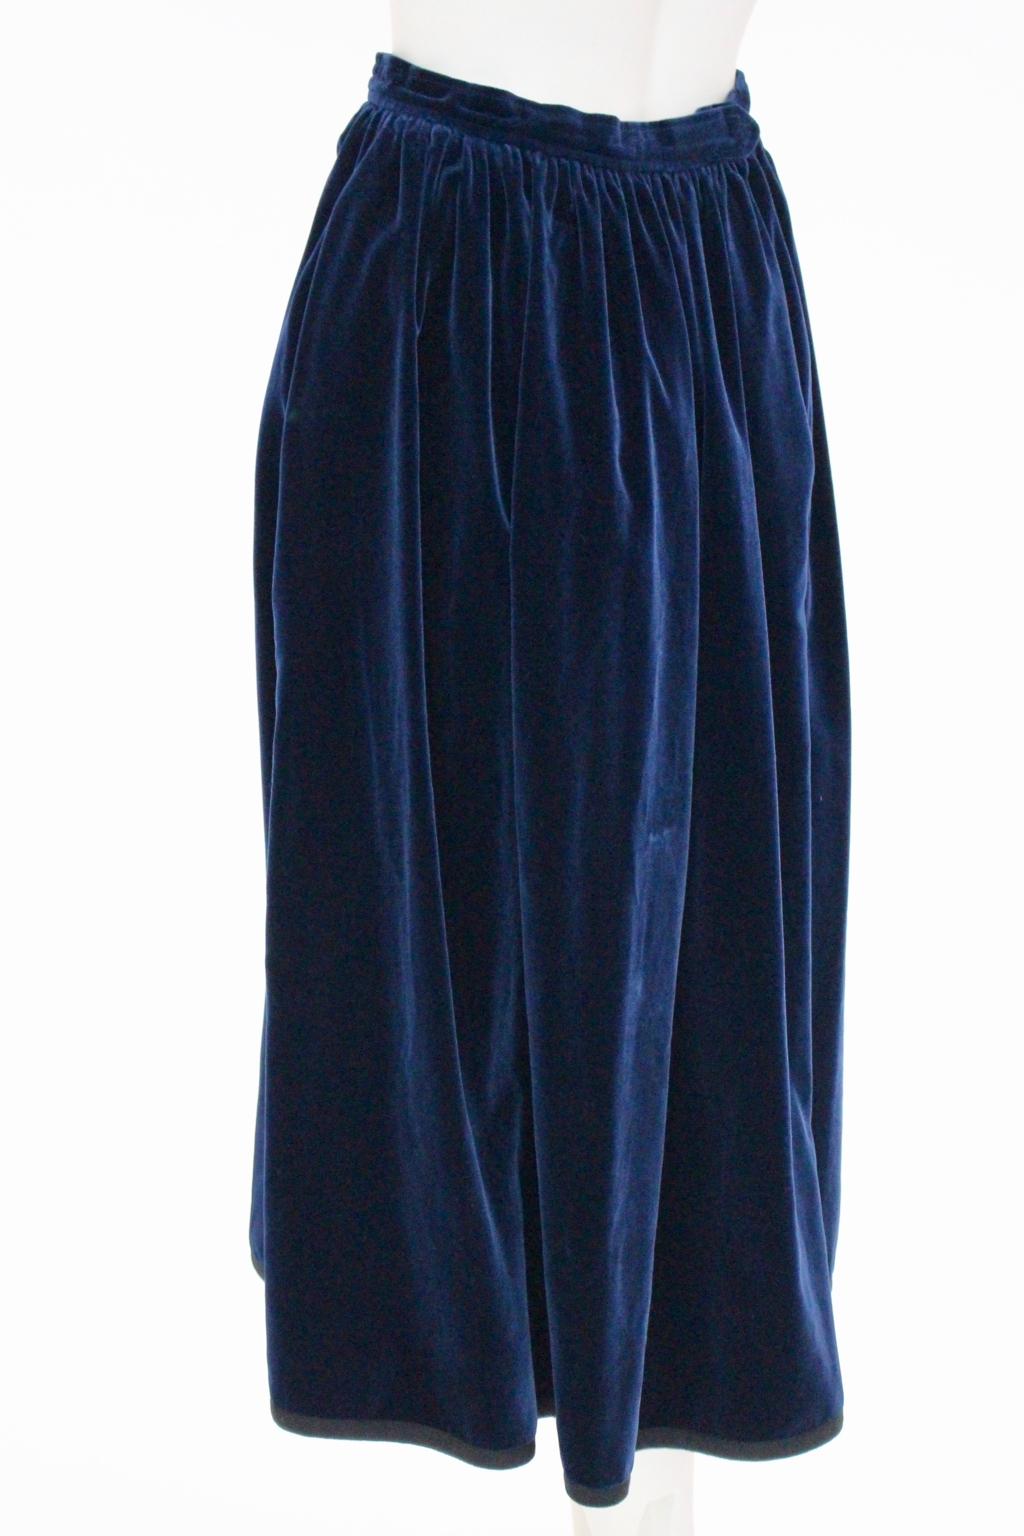 Blue Velvet Pleated Vintage Skirt by Yves Saint Laurent Rive Gauche For Sale 1